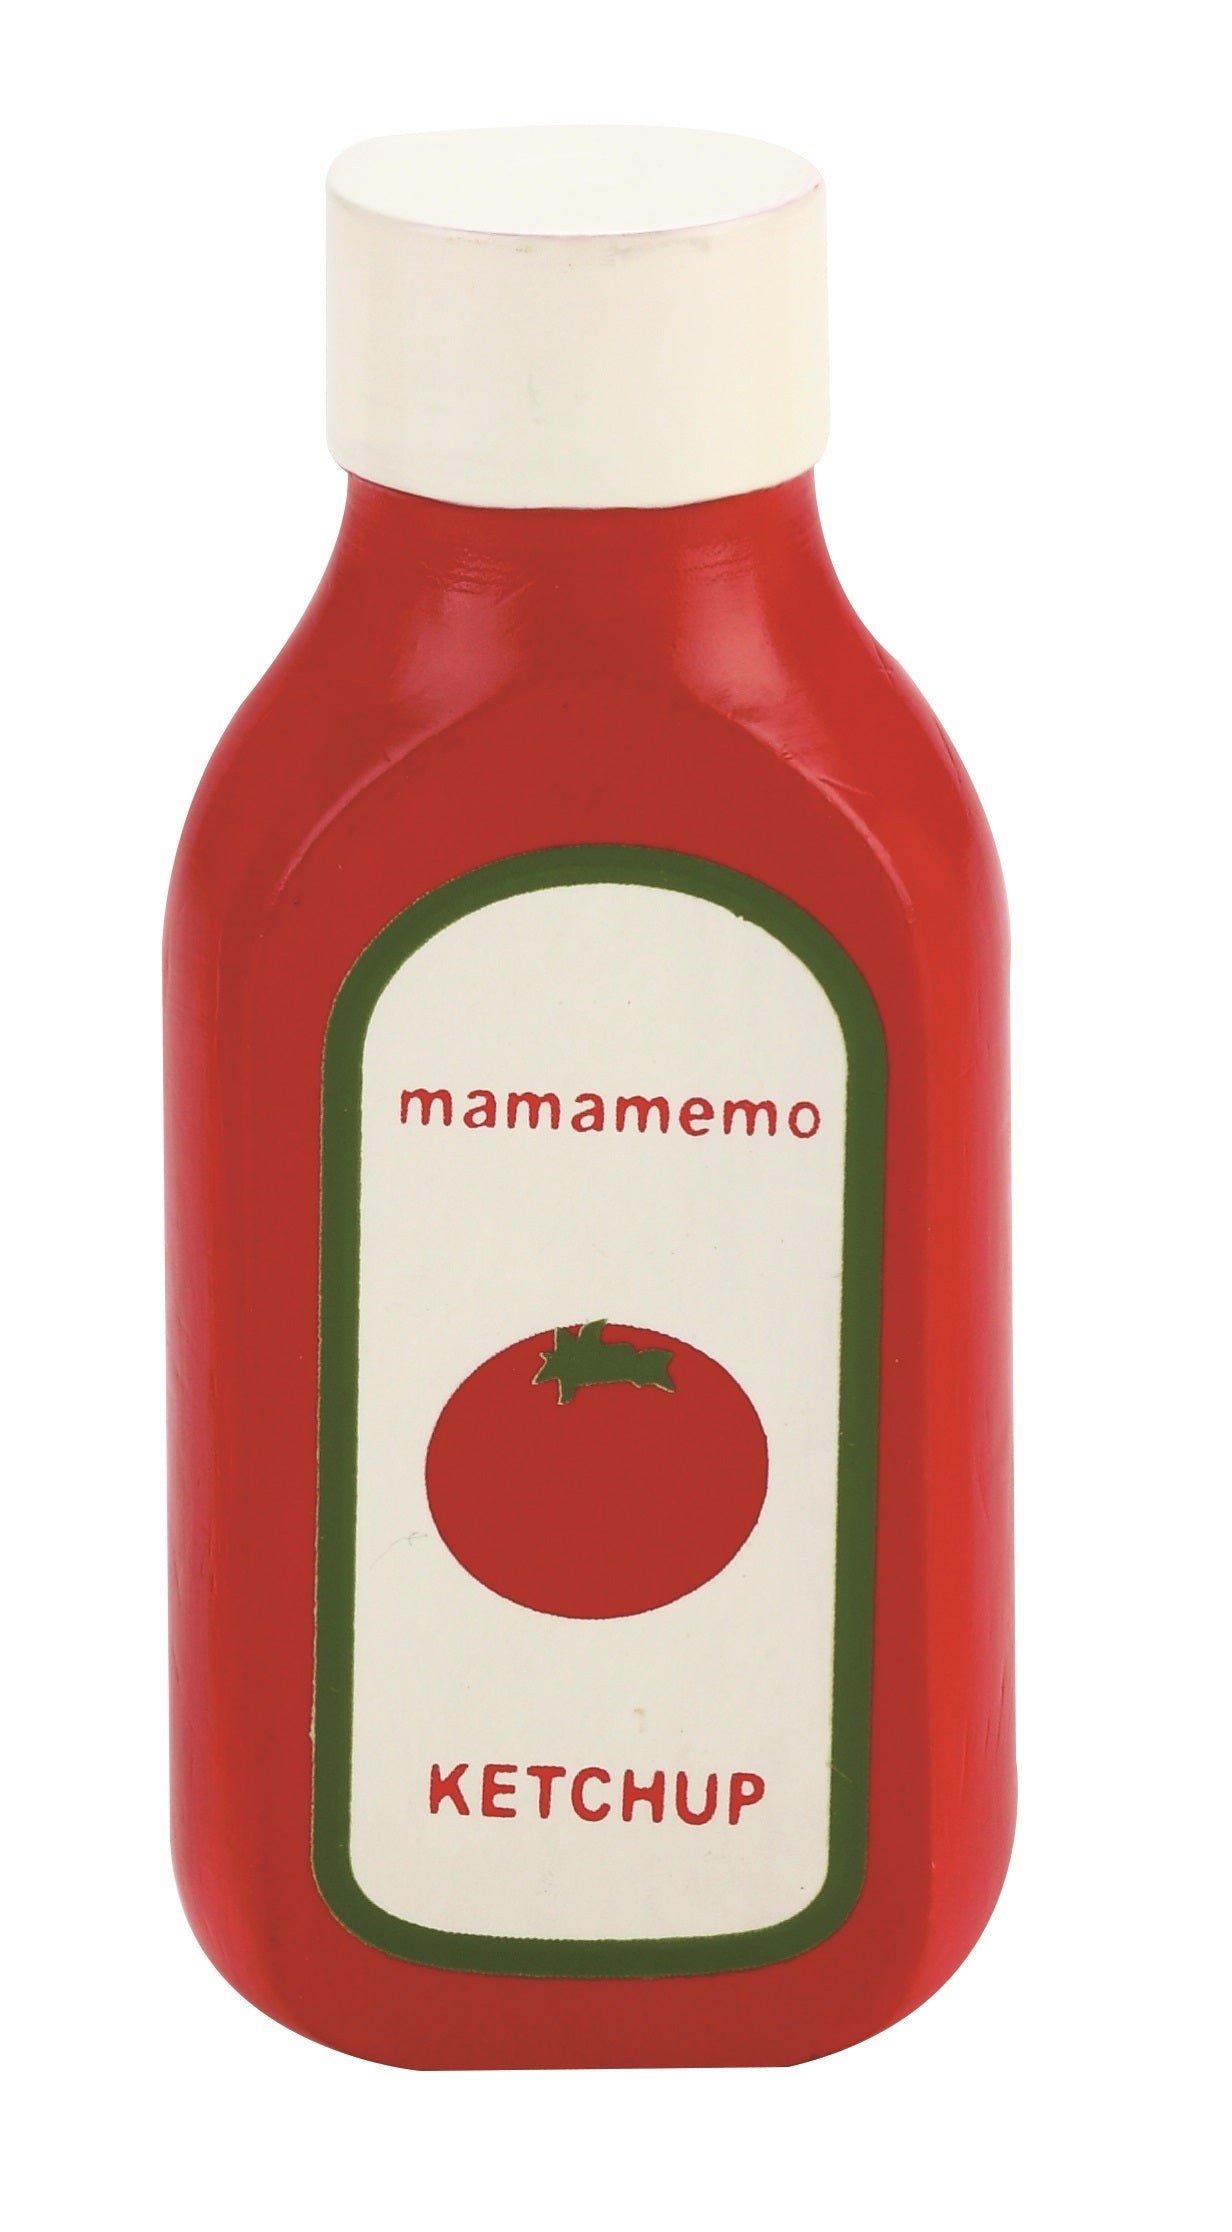 Mamamemo Ketchup